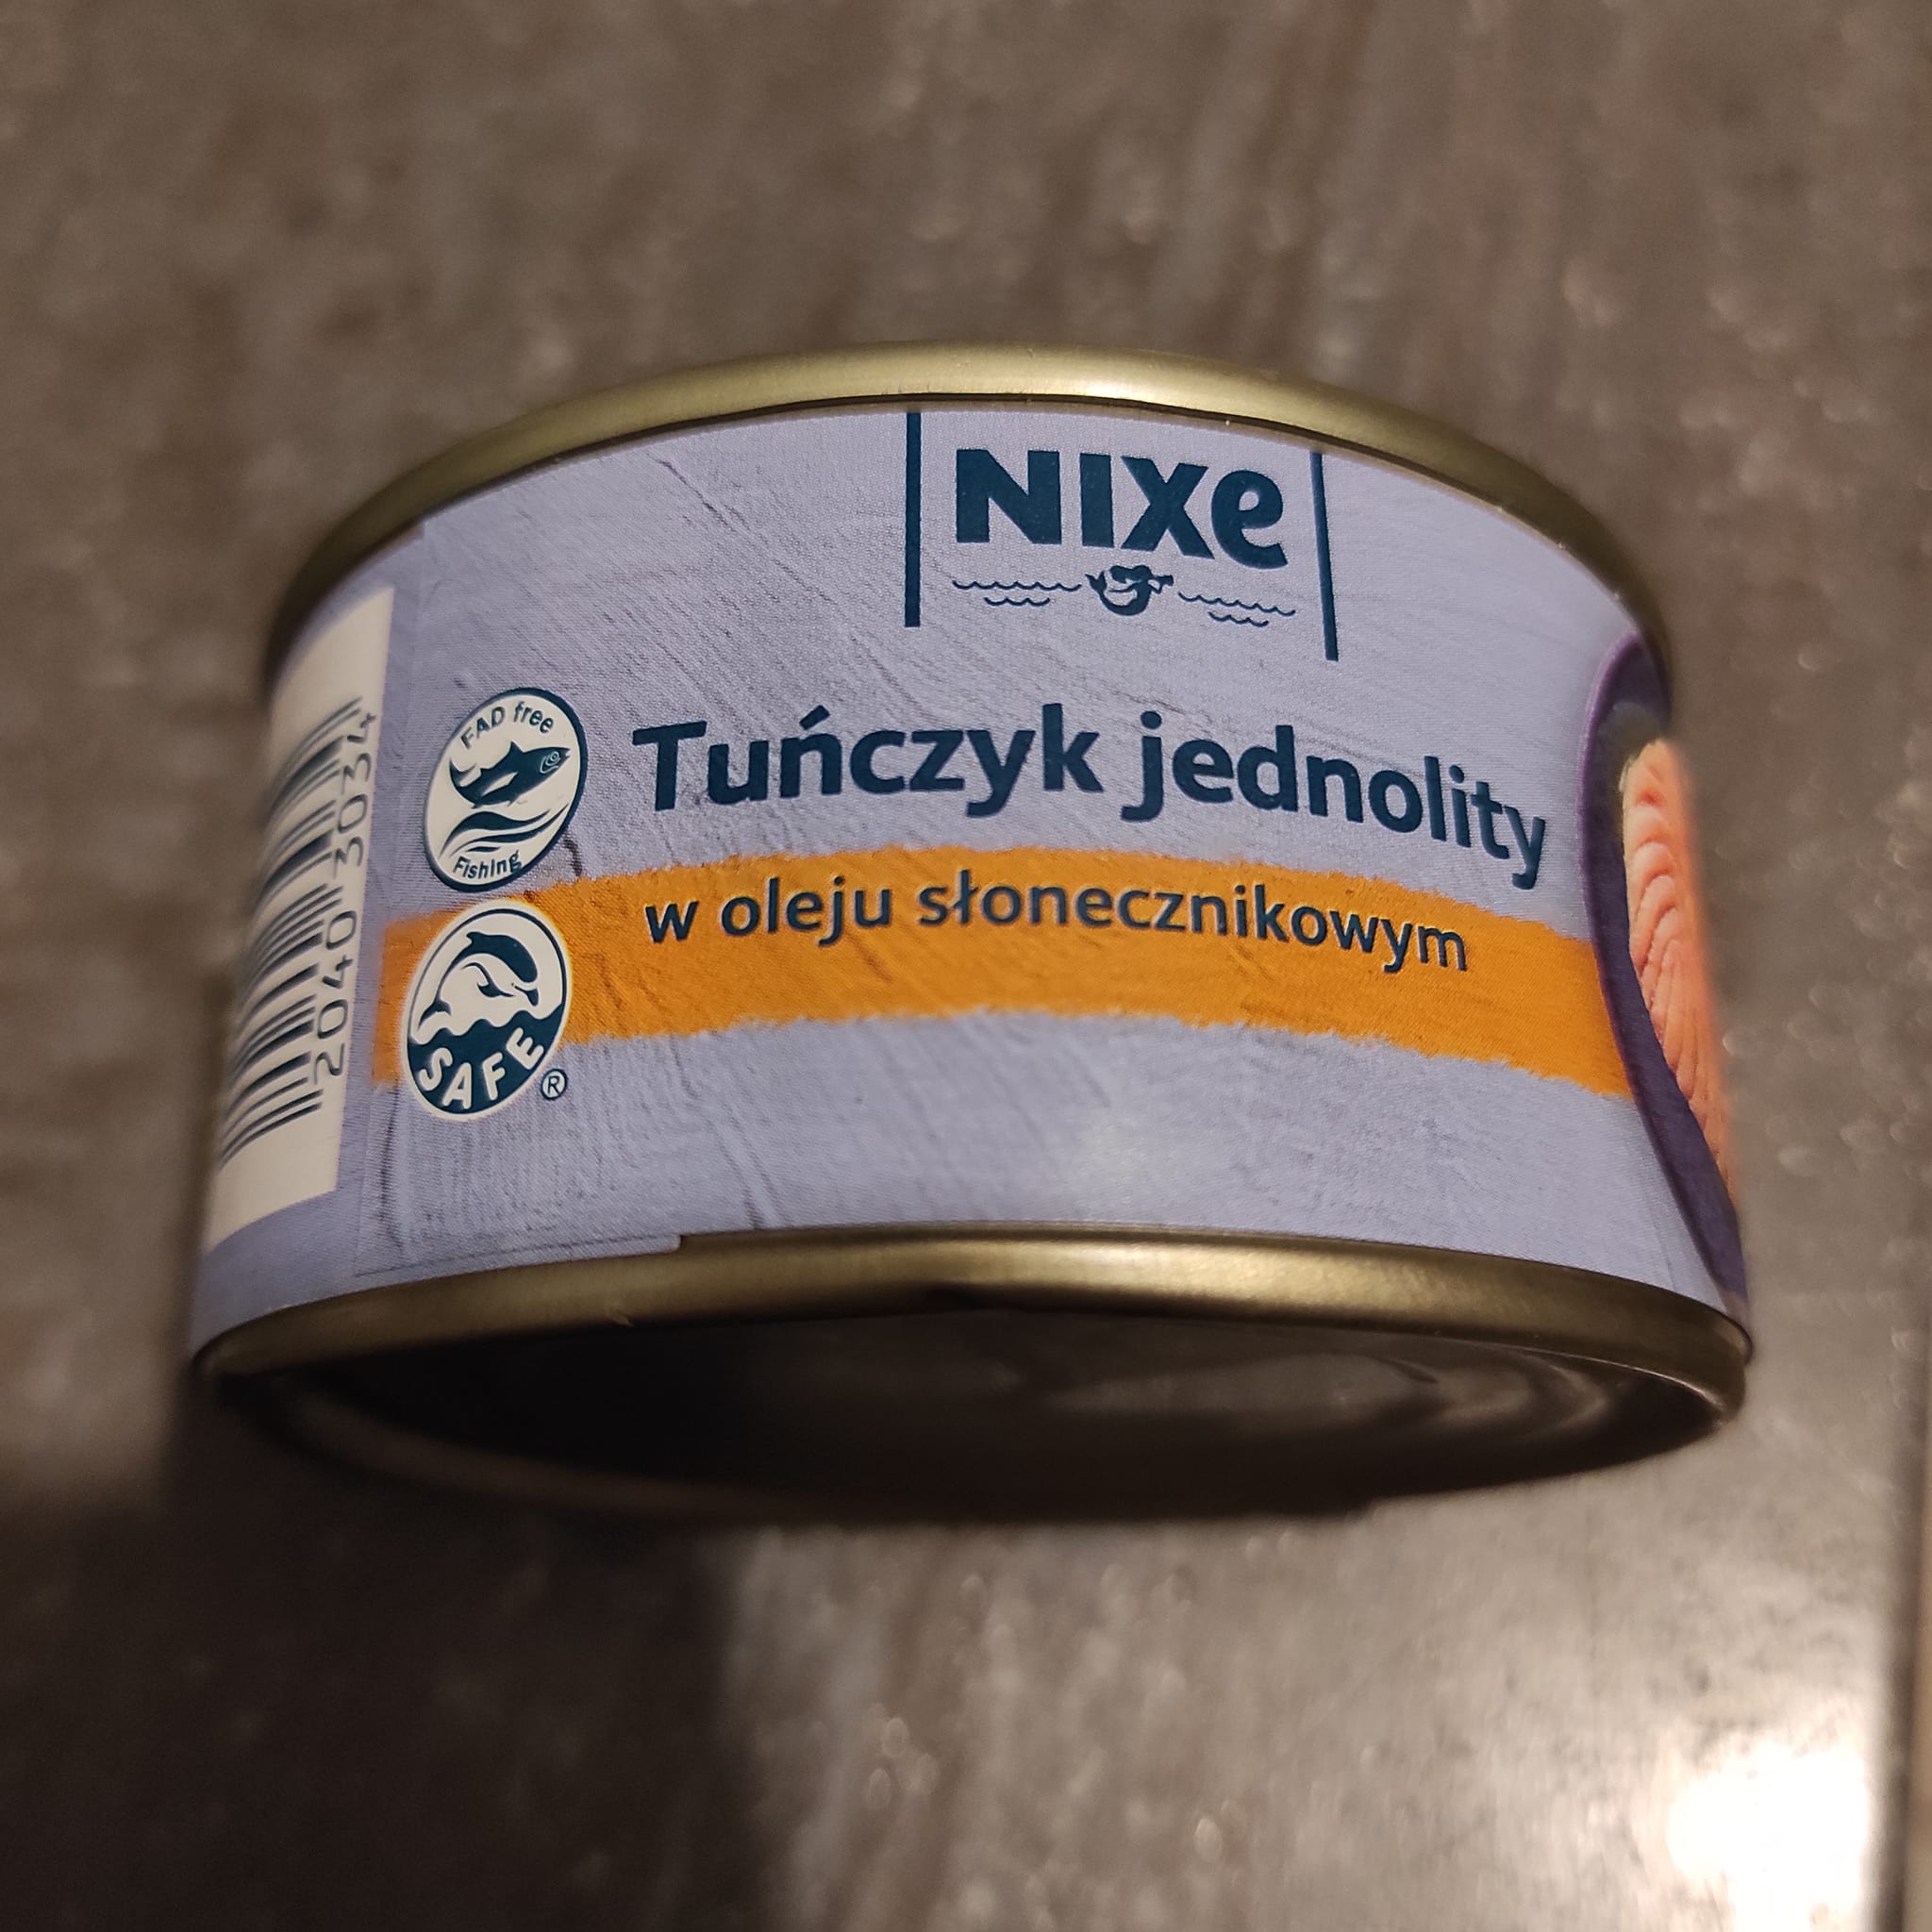 Tuńczyk jednolity w oleju słonecznikowym – Nixe 5 (3)